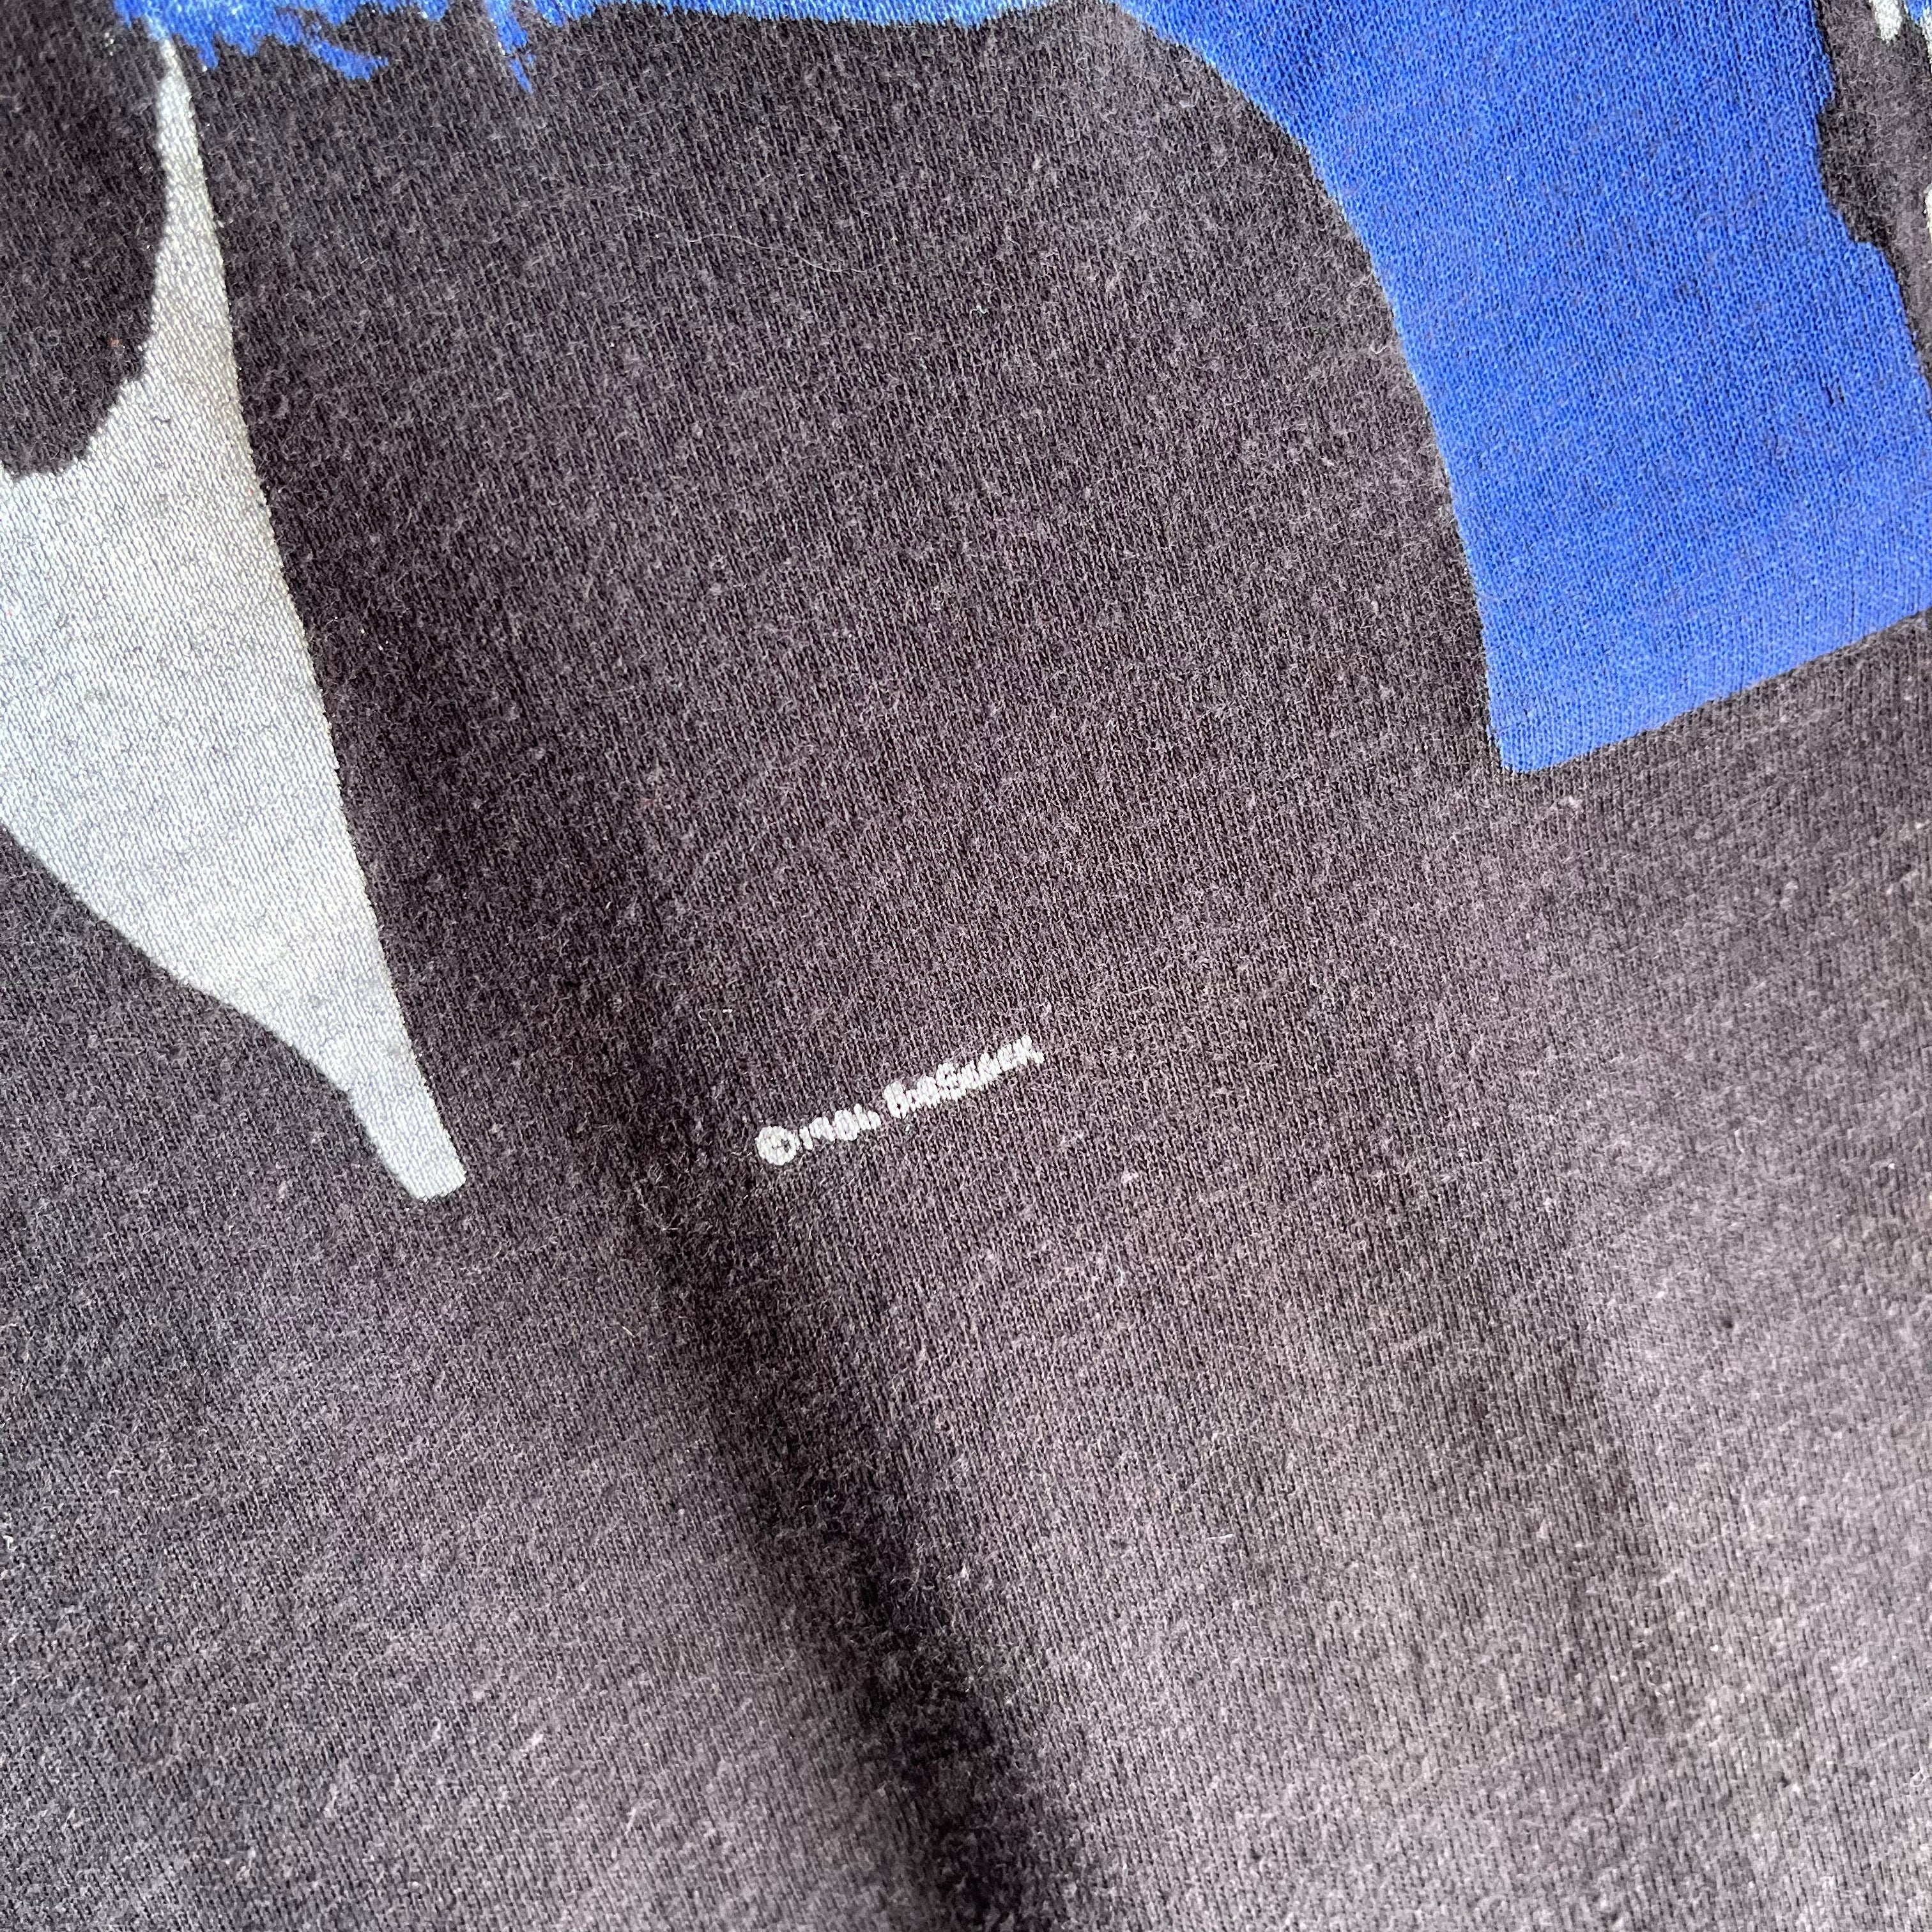 1986 Bob Seger & The Silver Bullet Band T-shirt à point unique